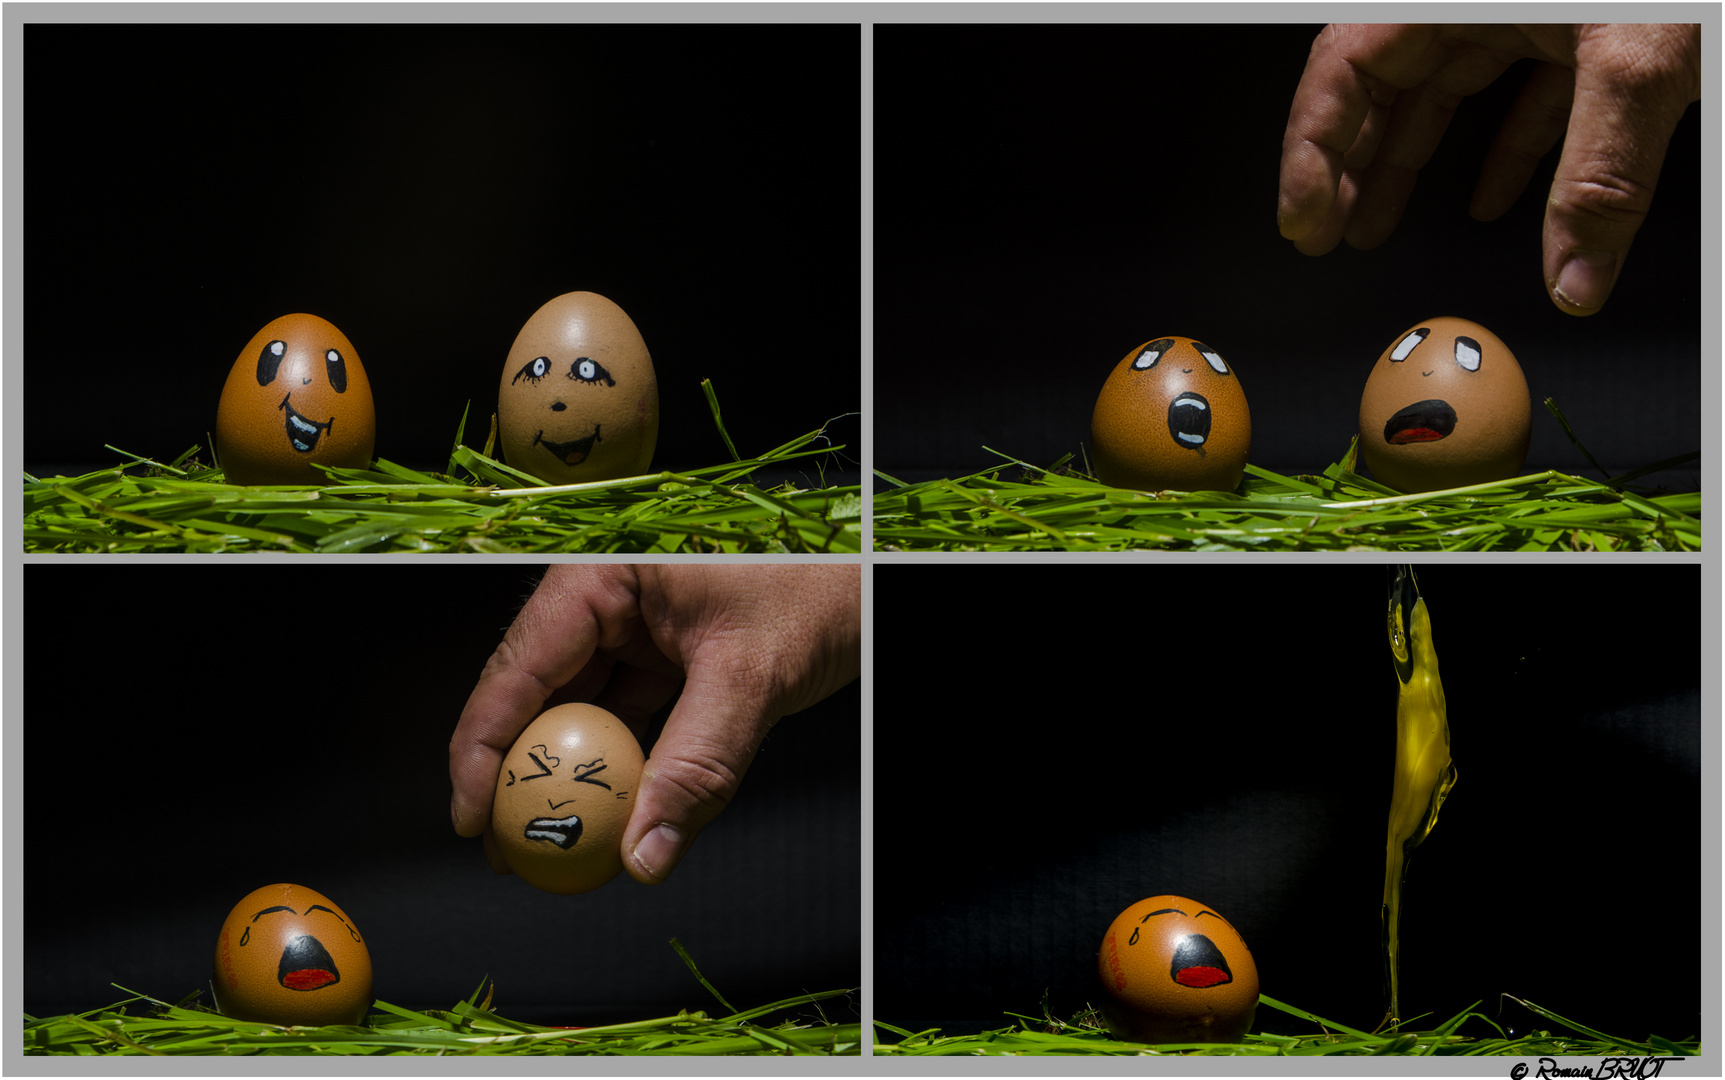 Egg story